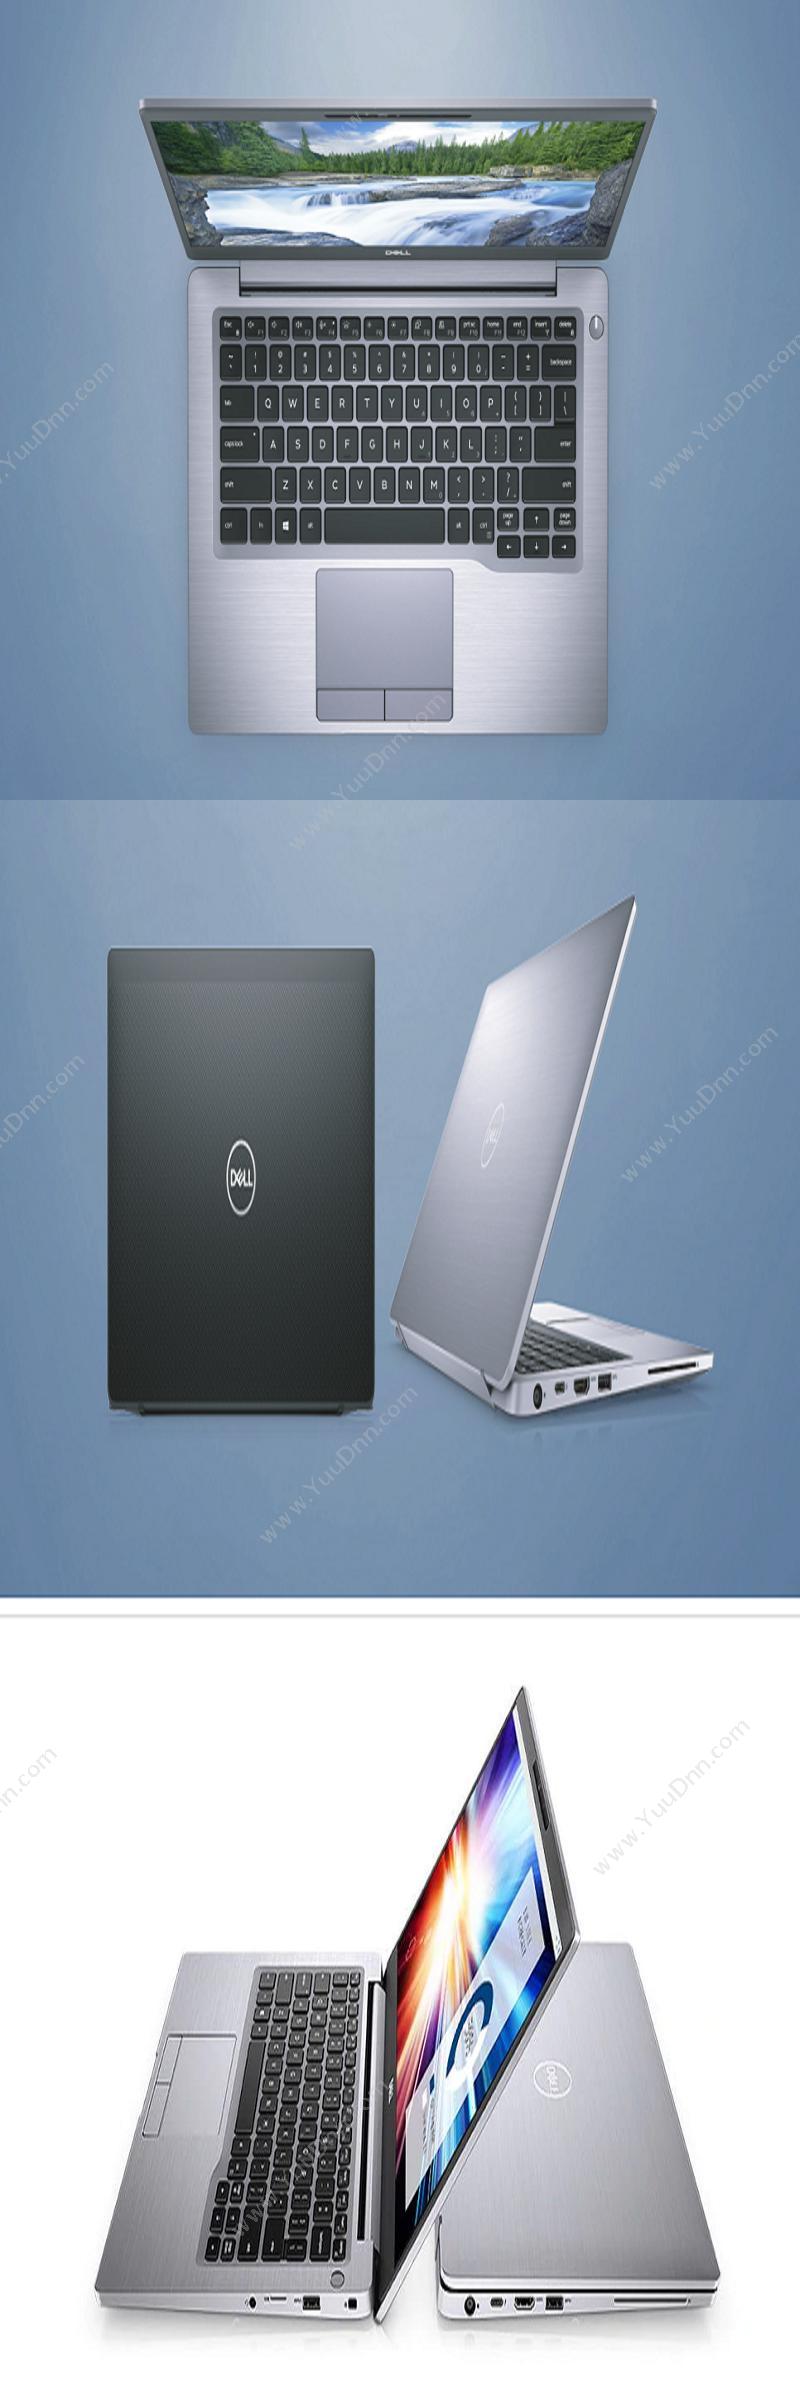 戴尔 Dell Latitude 7400 260044 （i7-8665U处理器/16GB内存/1TB 固态硬盘/14.0寸/集成显卡/指纹识别） 笔记本